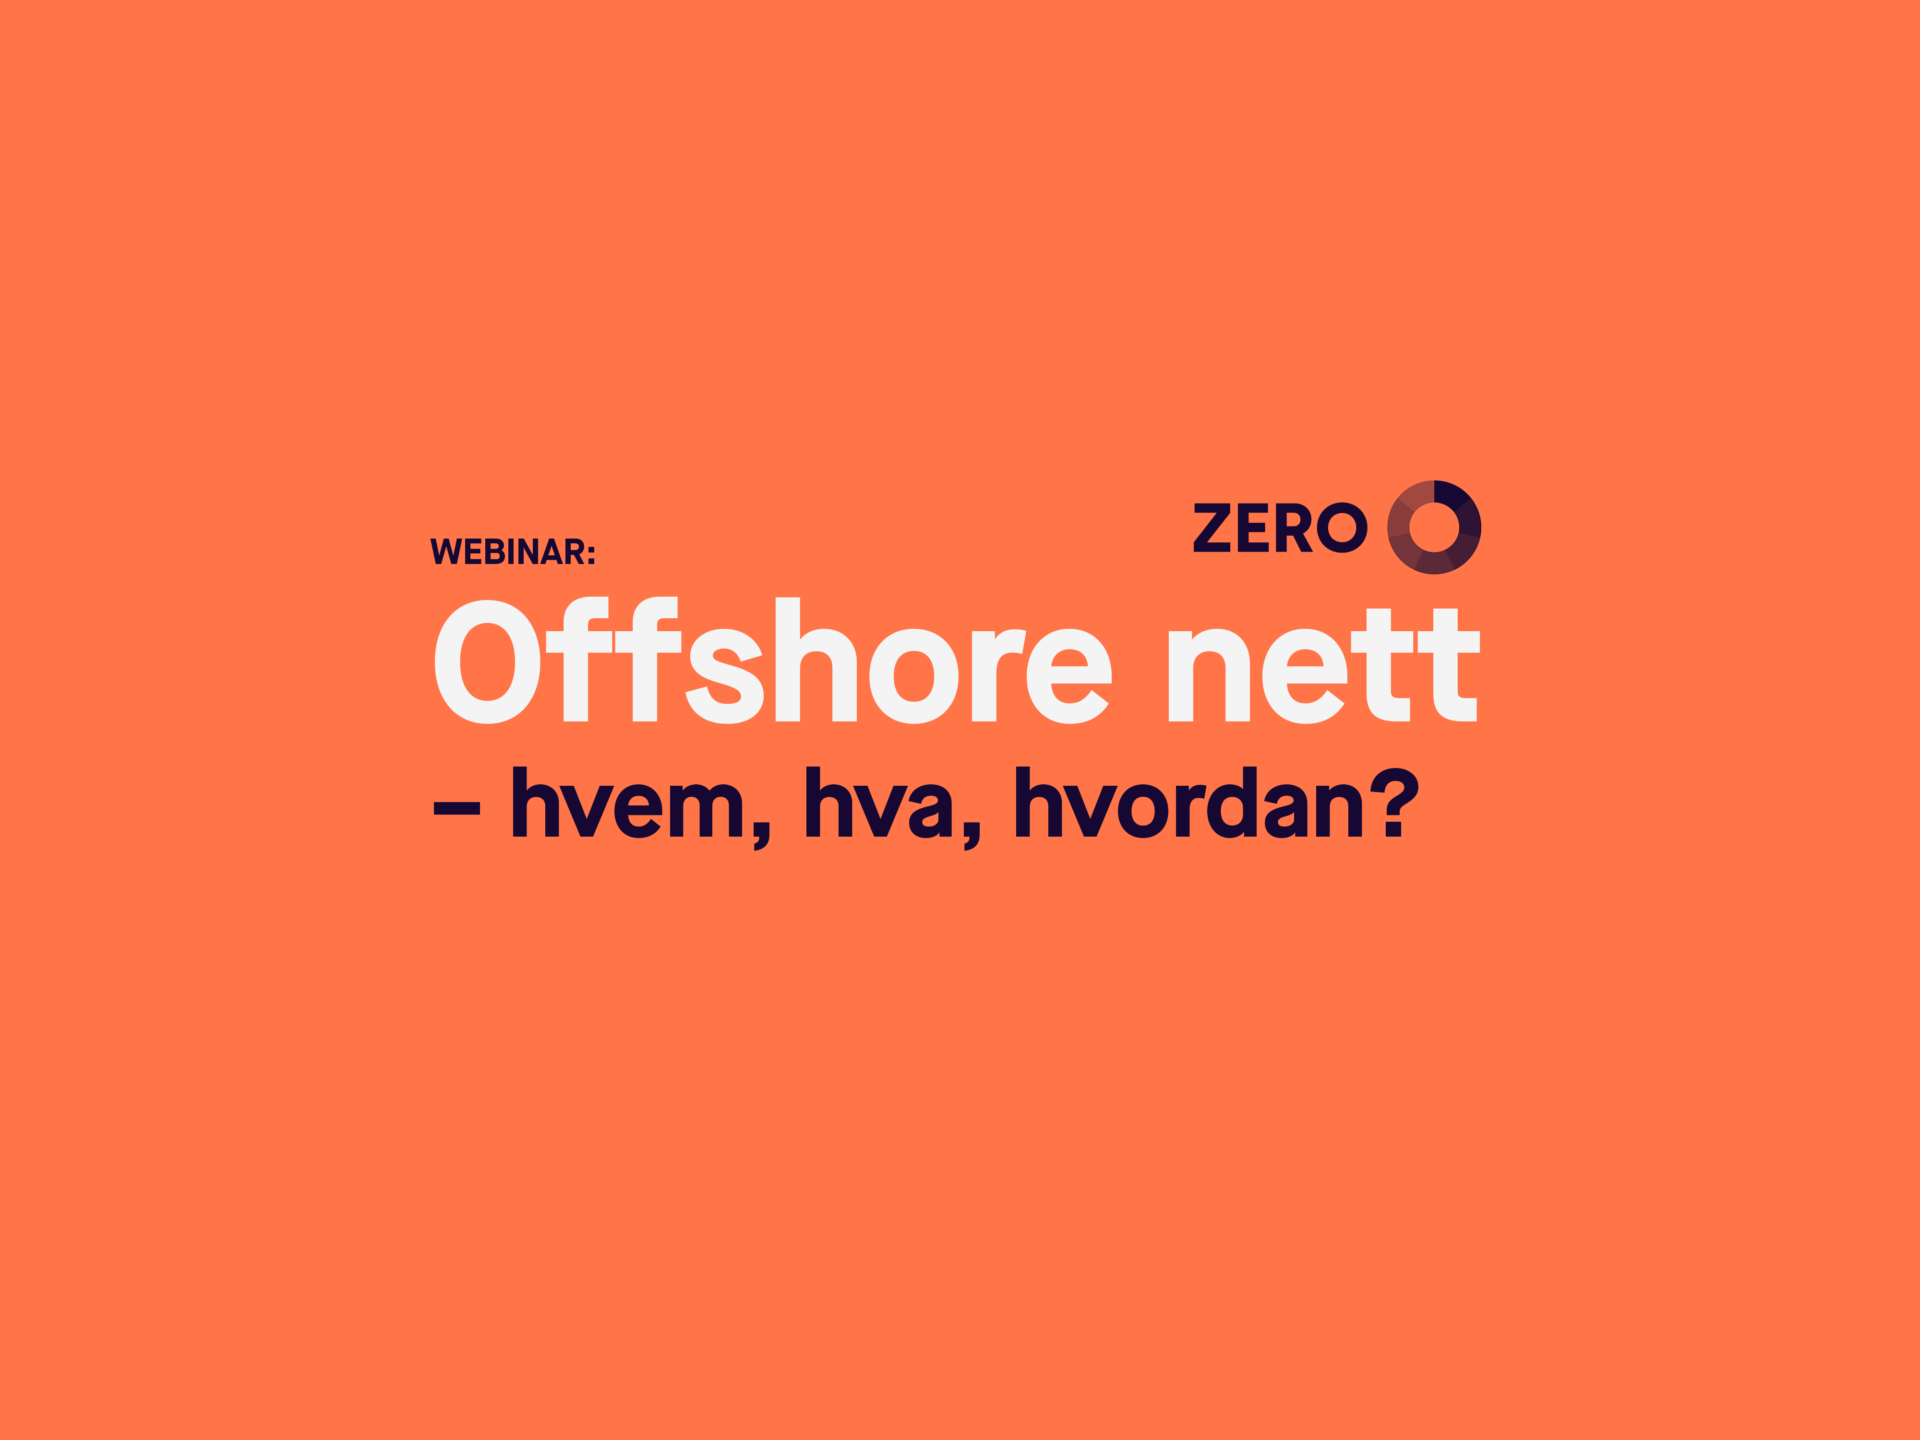 Mange uavklarte spørsmål om offshore nett